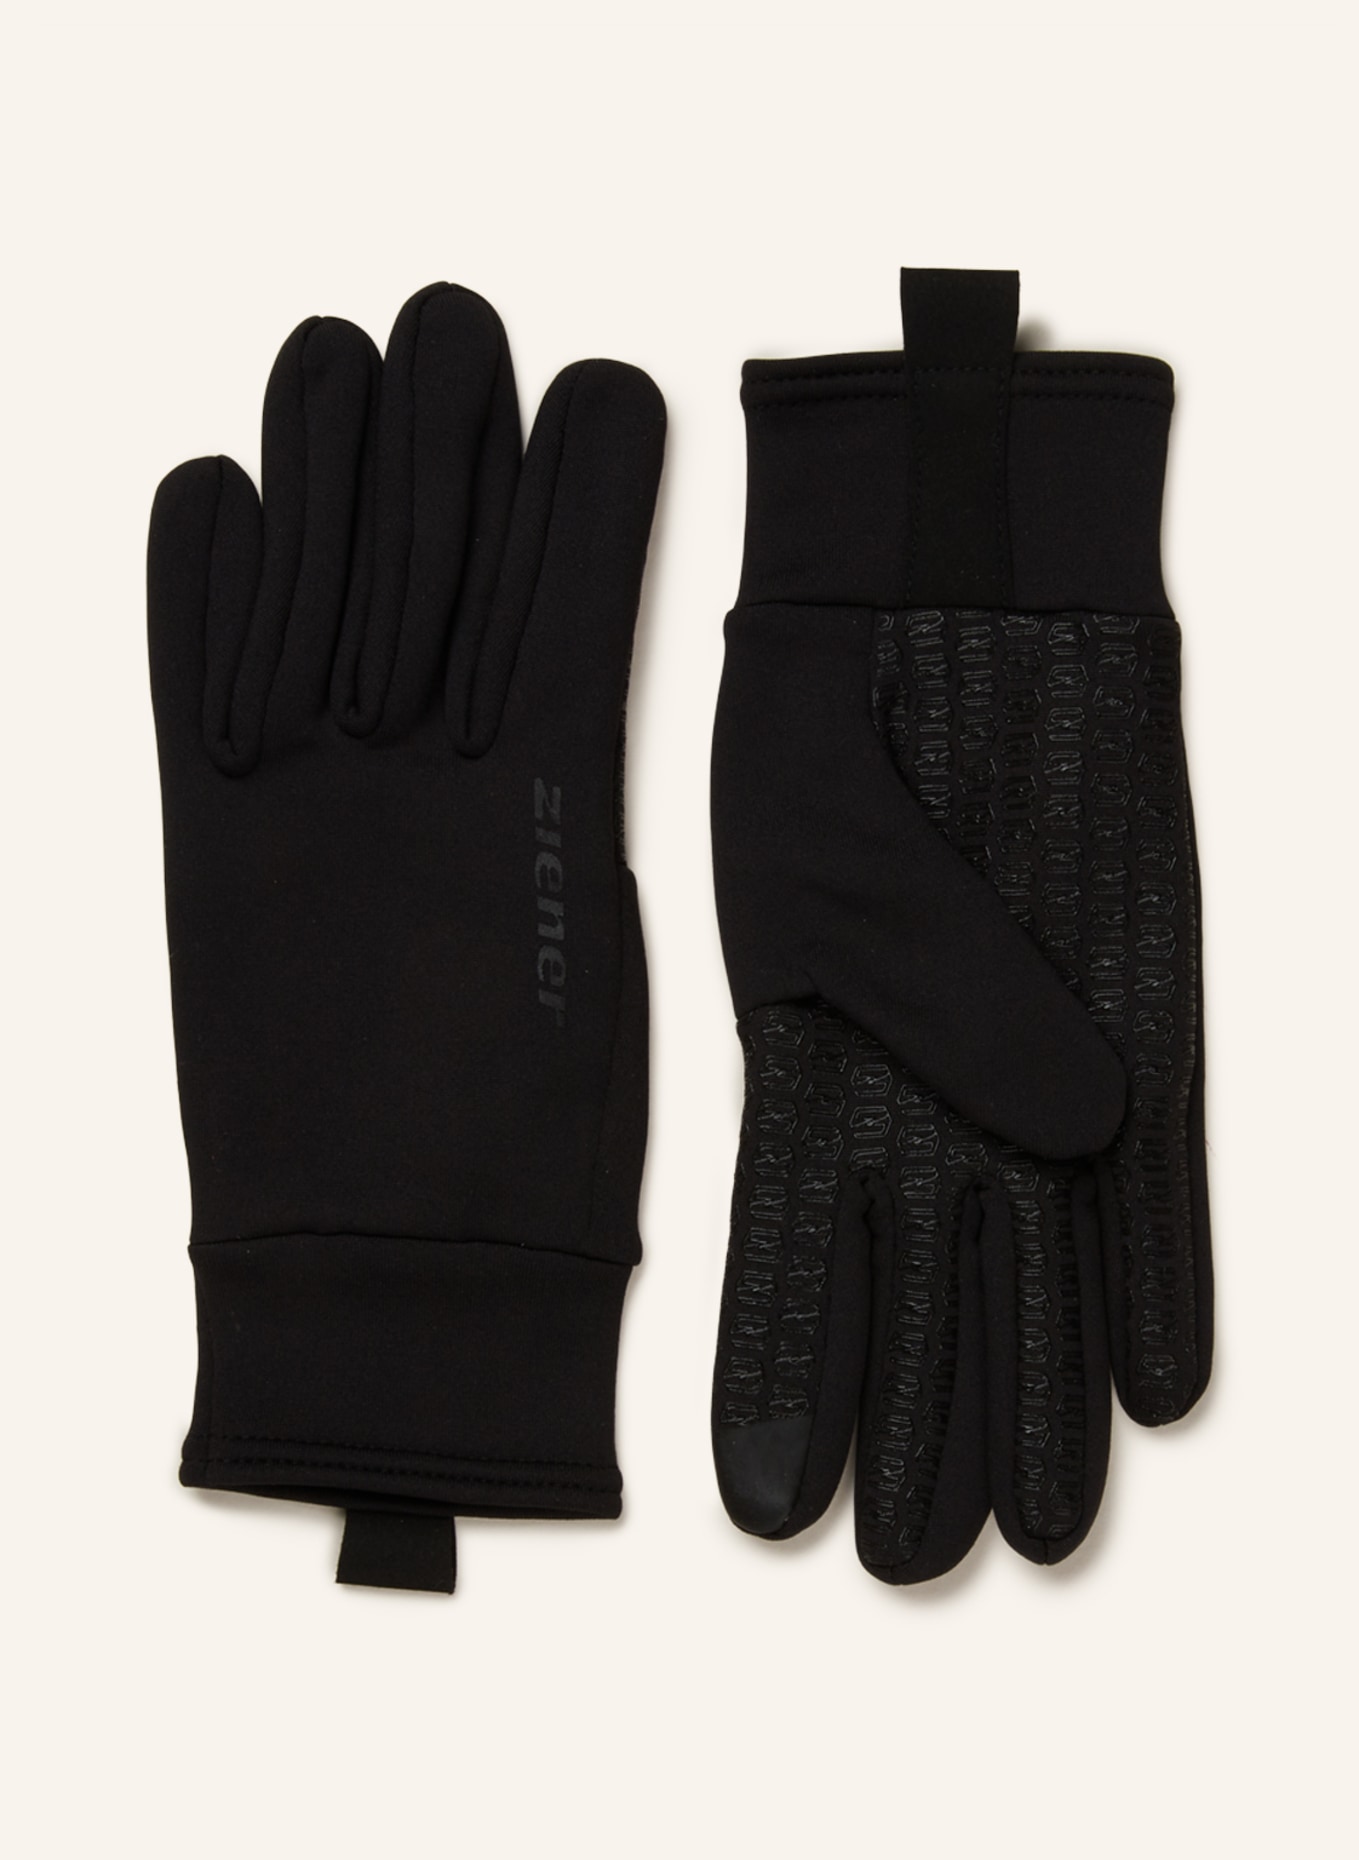 ziener Multisport-Handschuhe ISANTO TOUCH in mit Touchscreen-Funktion schwarz